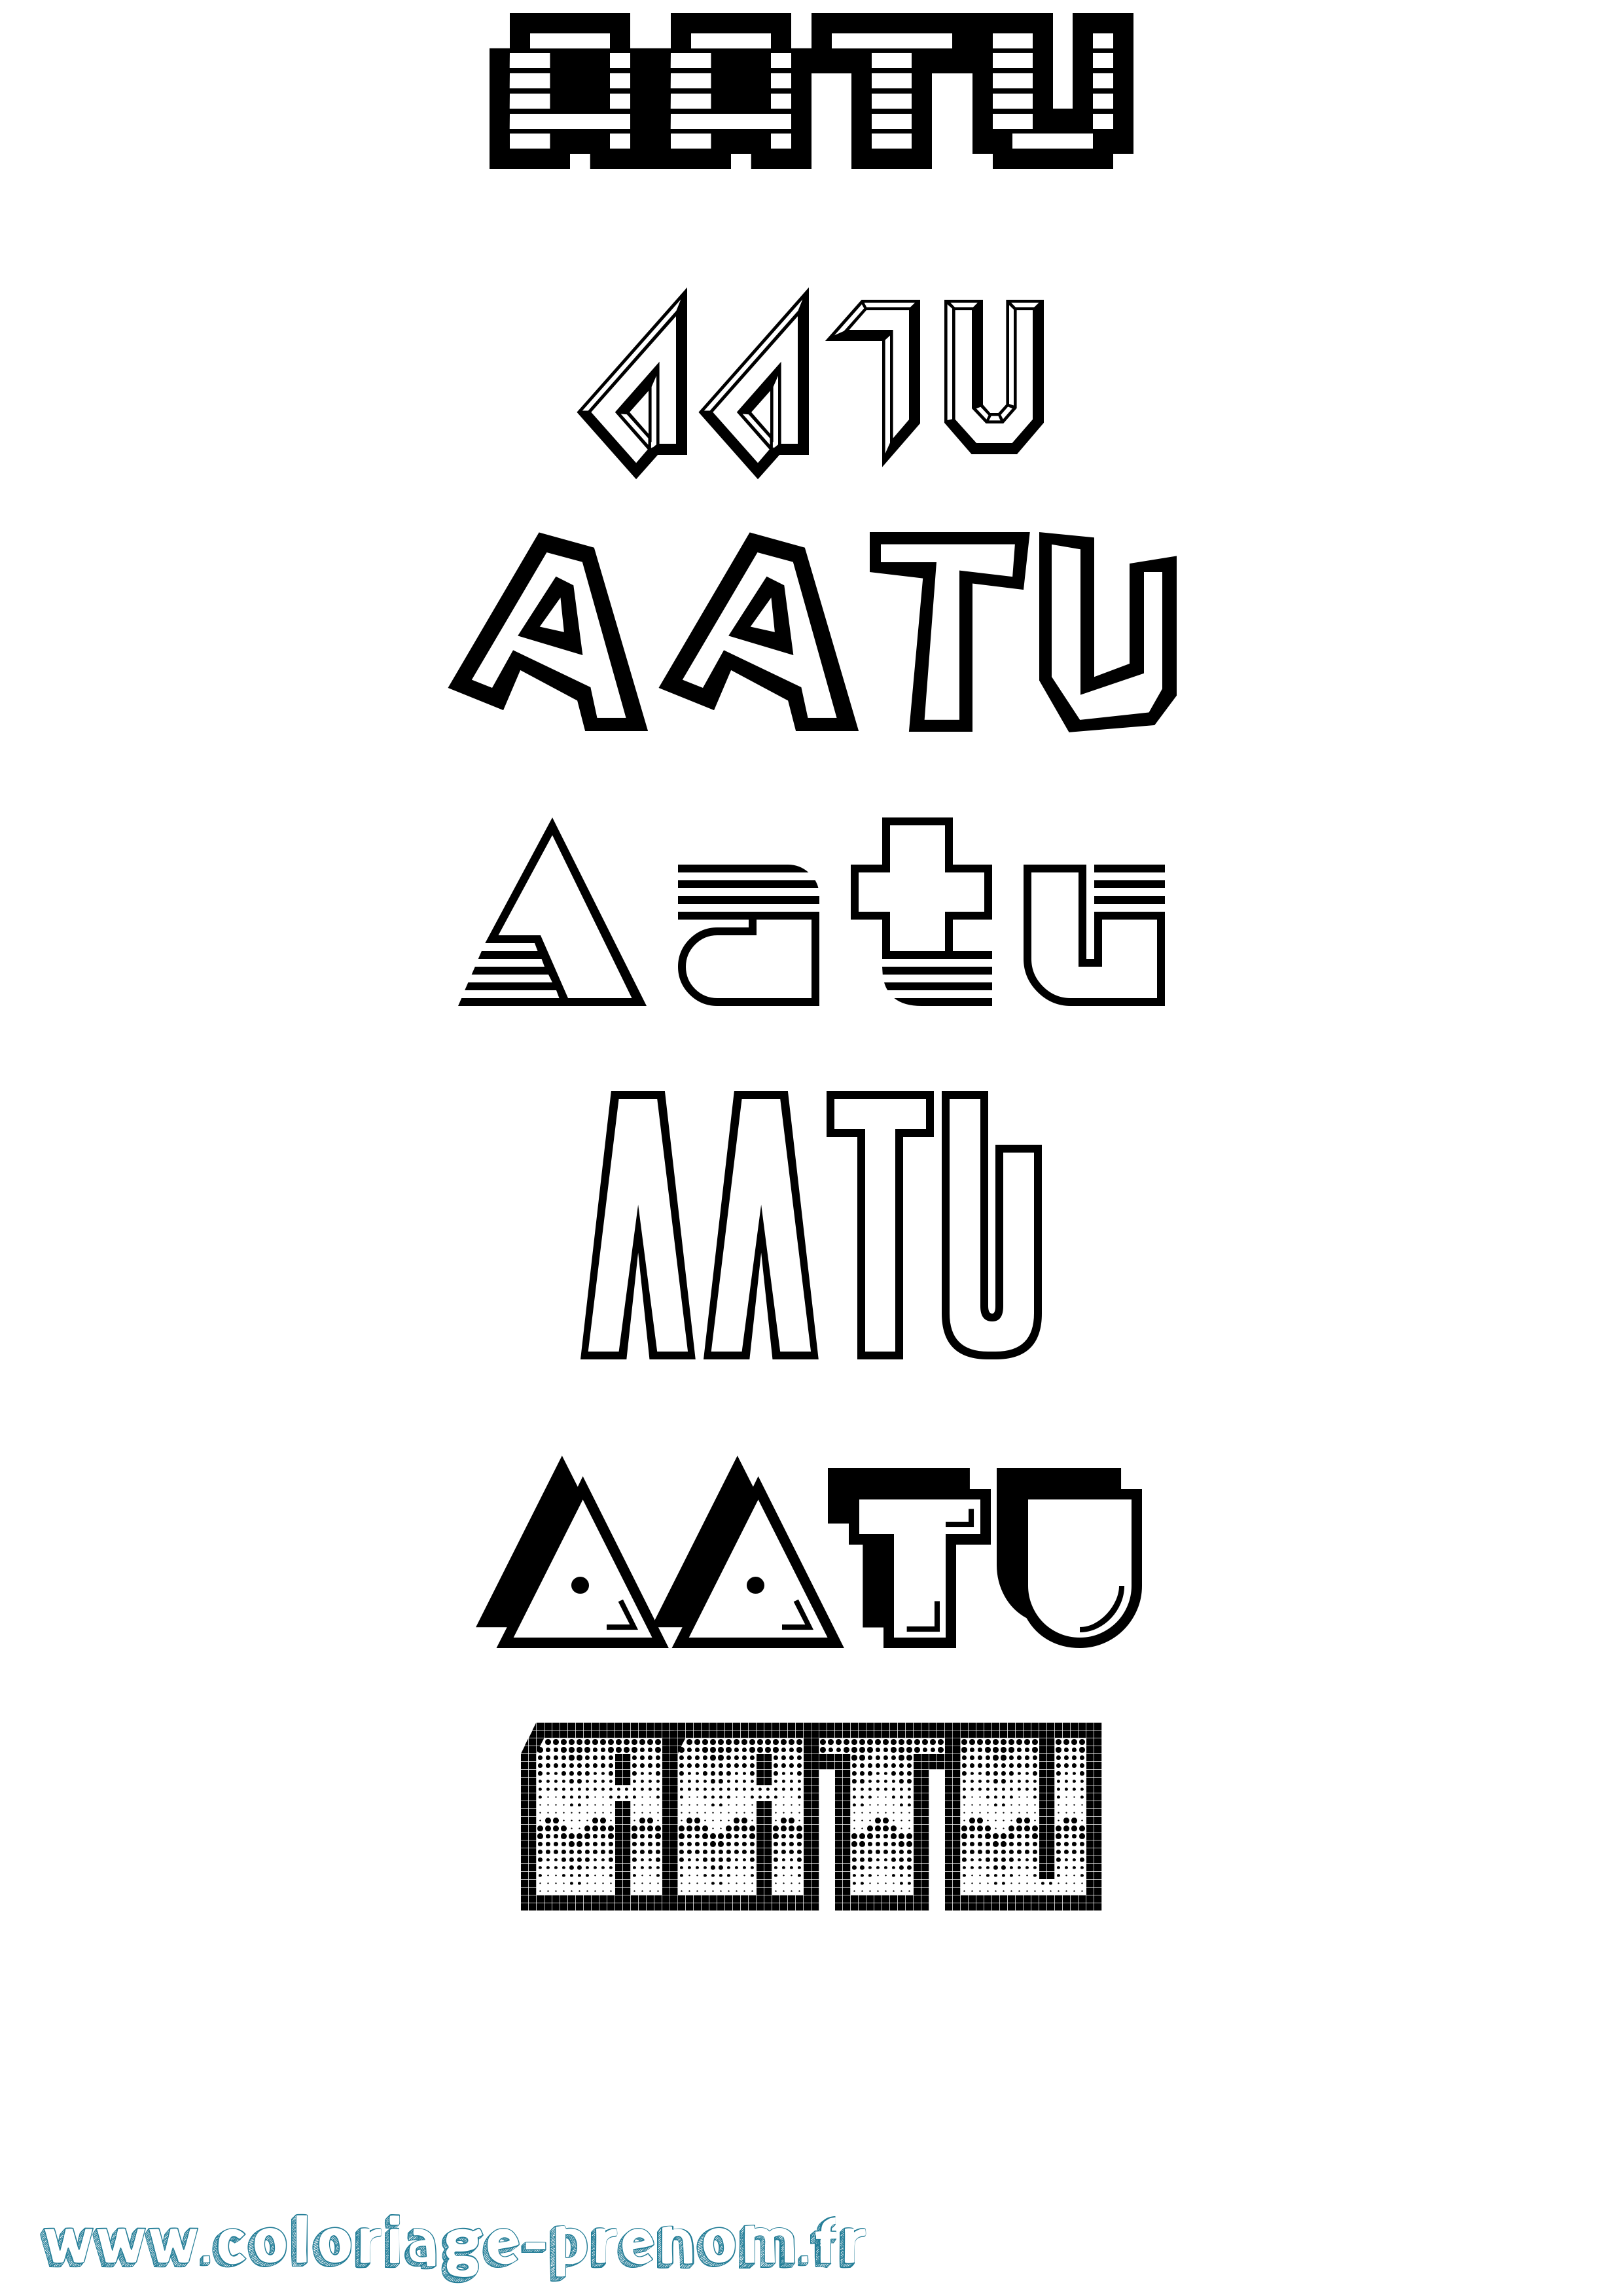 Coloriage prénom Aatu